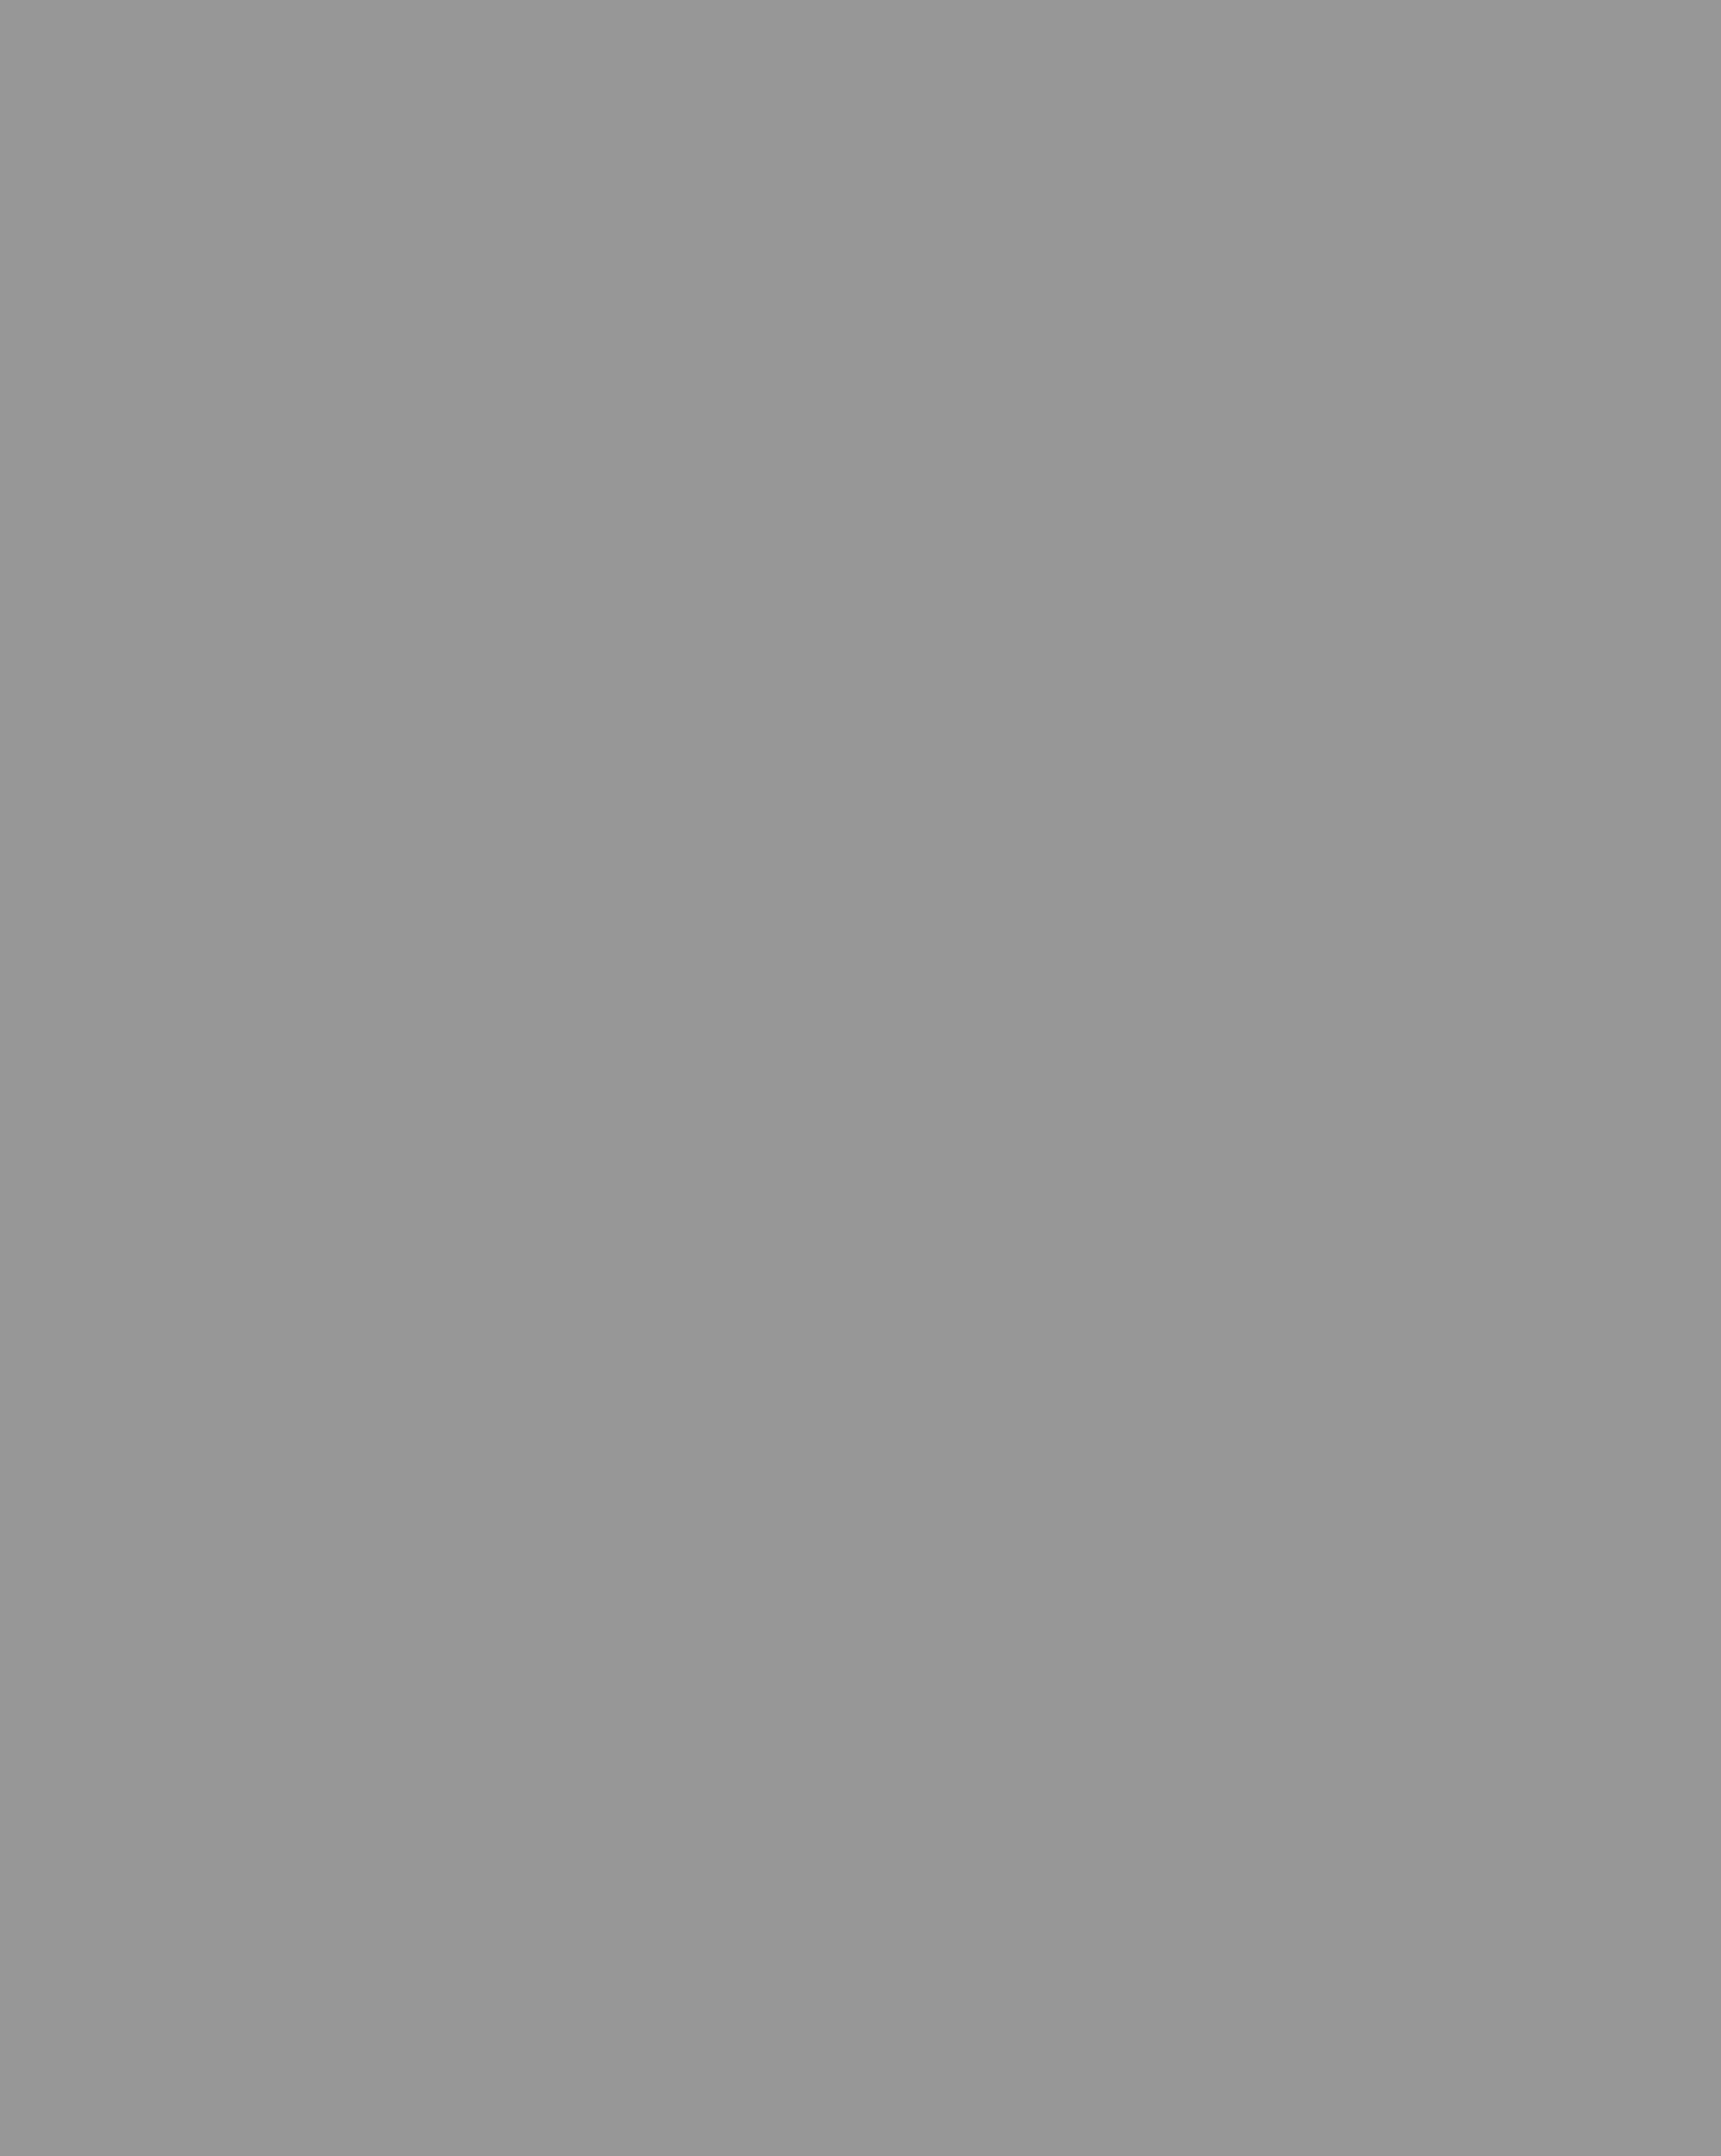 Людмила Зыкина. 1964 год. Фотография: Ялтинский историко-литературный музей, Ялта, Республика Крым